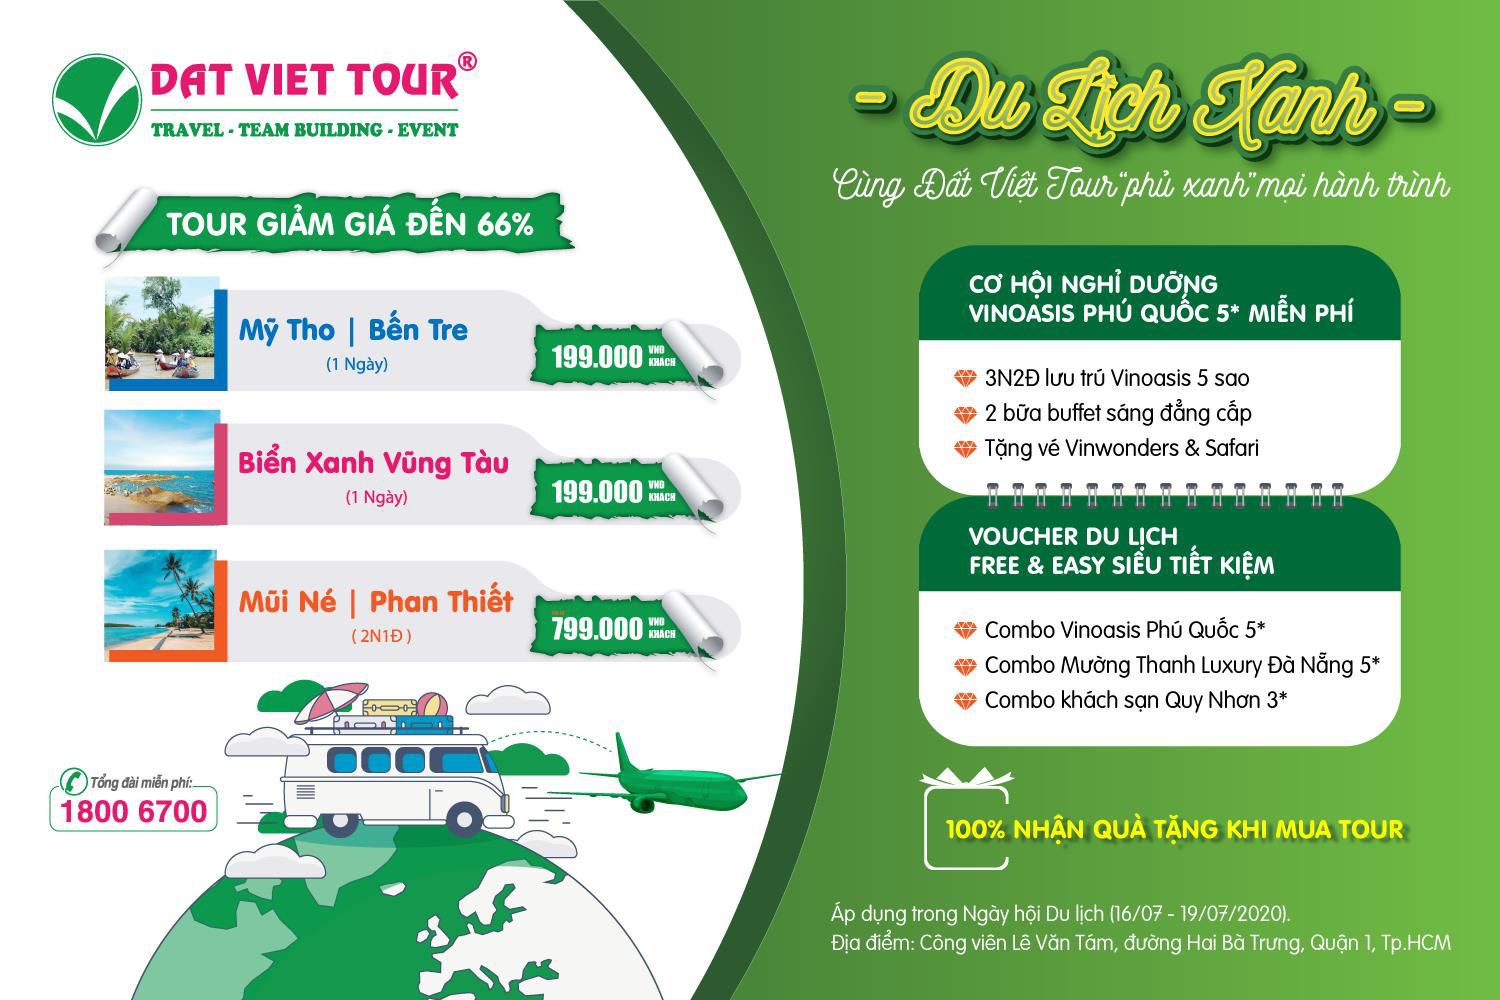 Đất Việt Tour chính thức ra mắt chương trình Du lịch xanh - Ảnh 2.